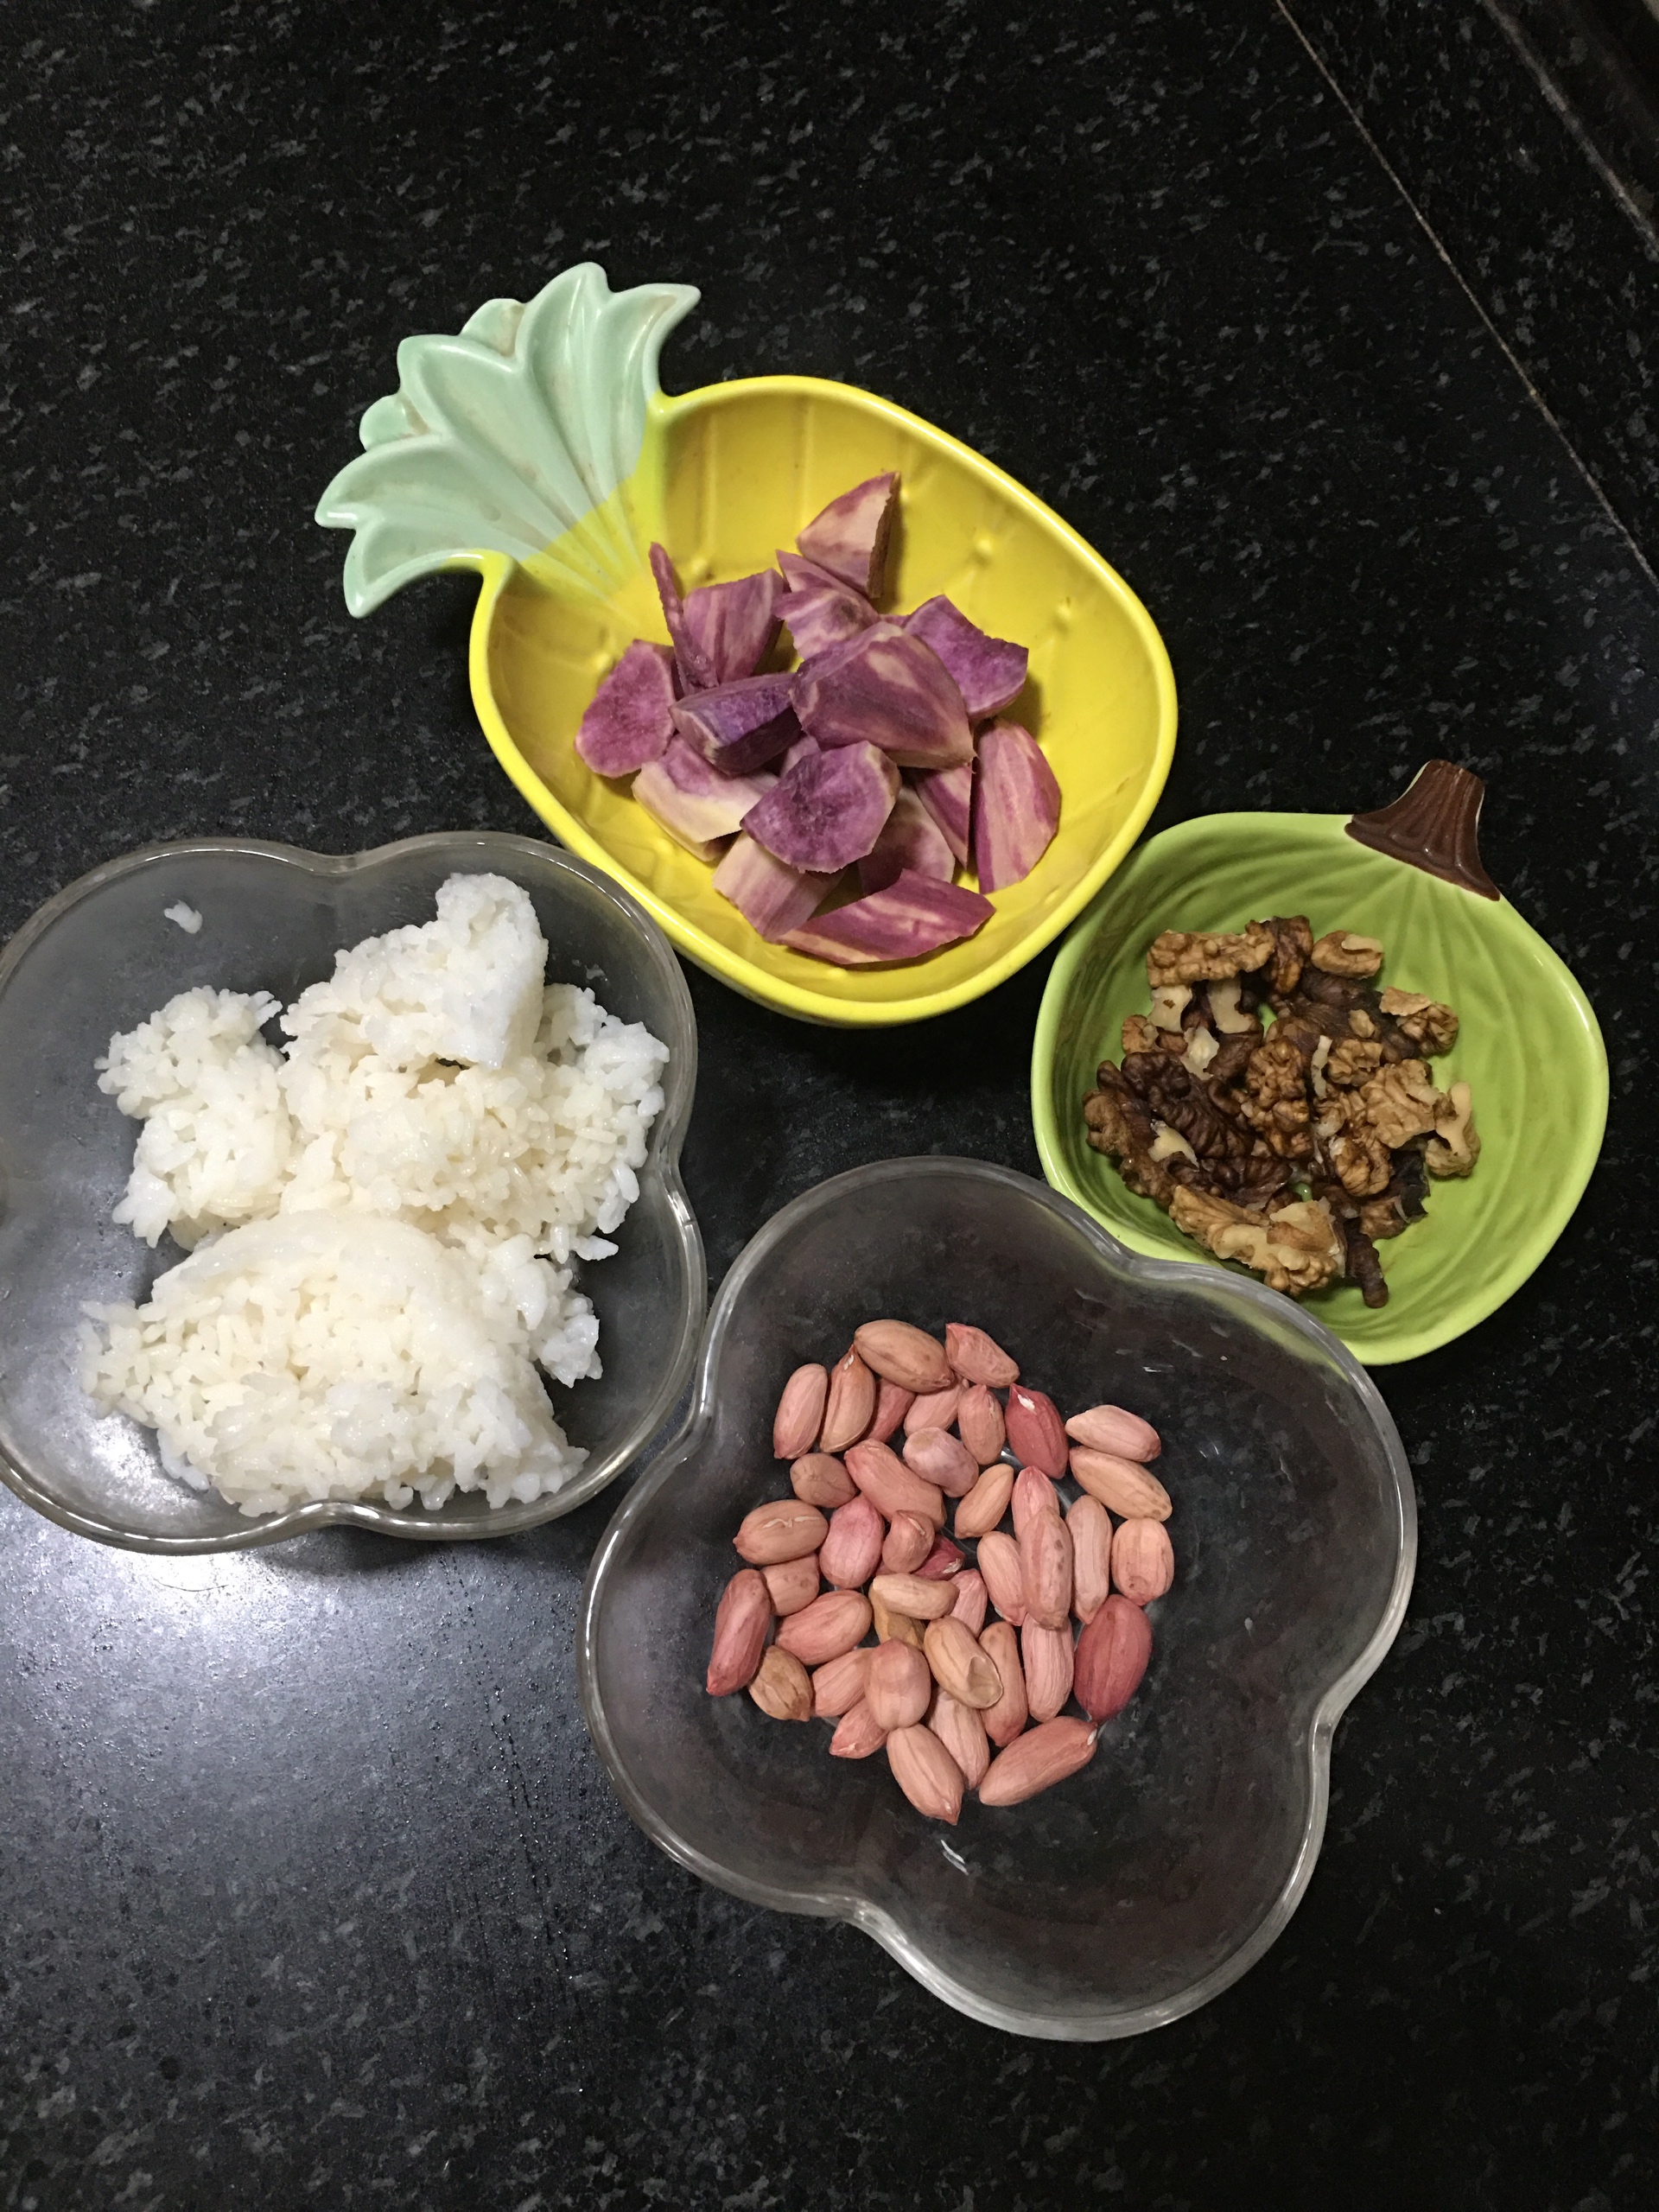 ༄「紫薯核桃米饭🍚糊」༄的做法 步骤1